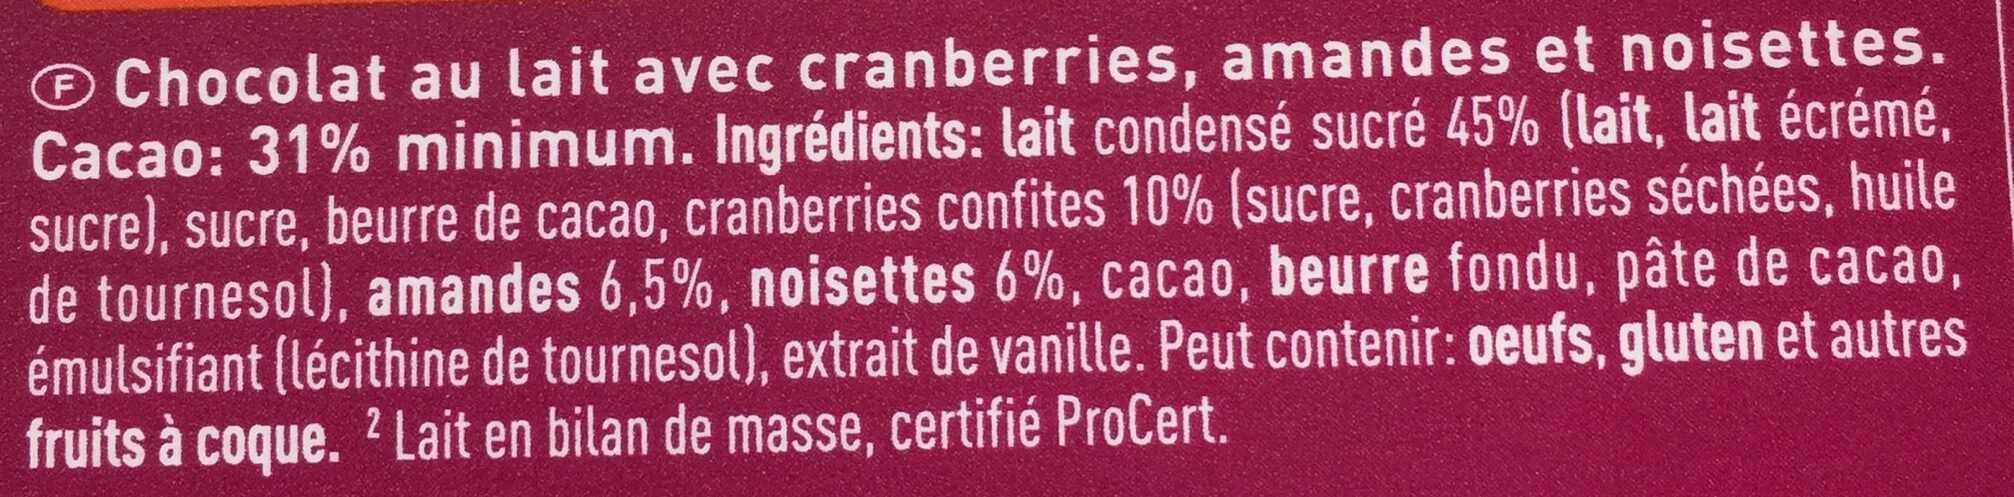 Lait cranberries amandes noisettes - Ingredients - fr